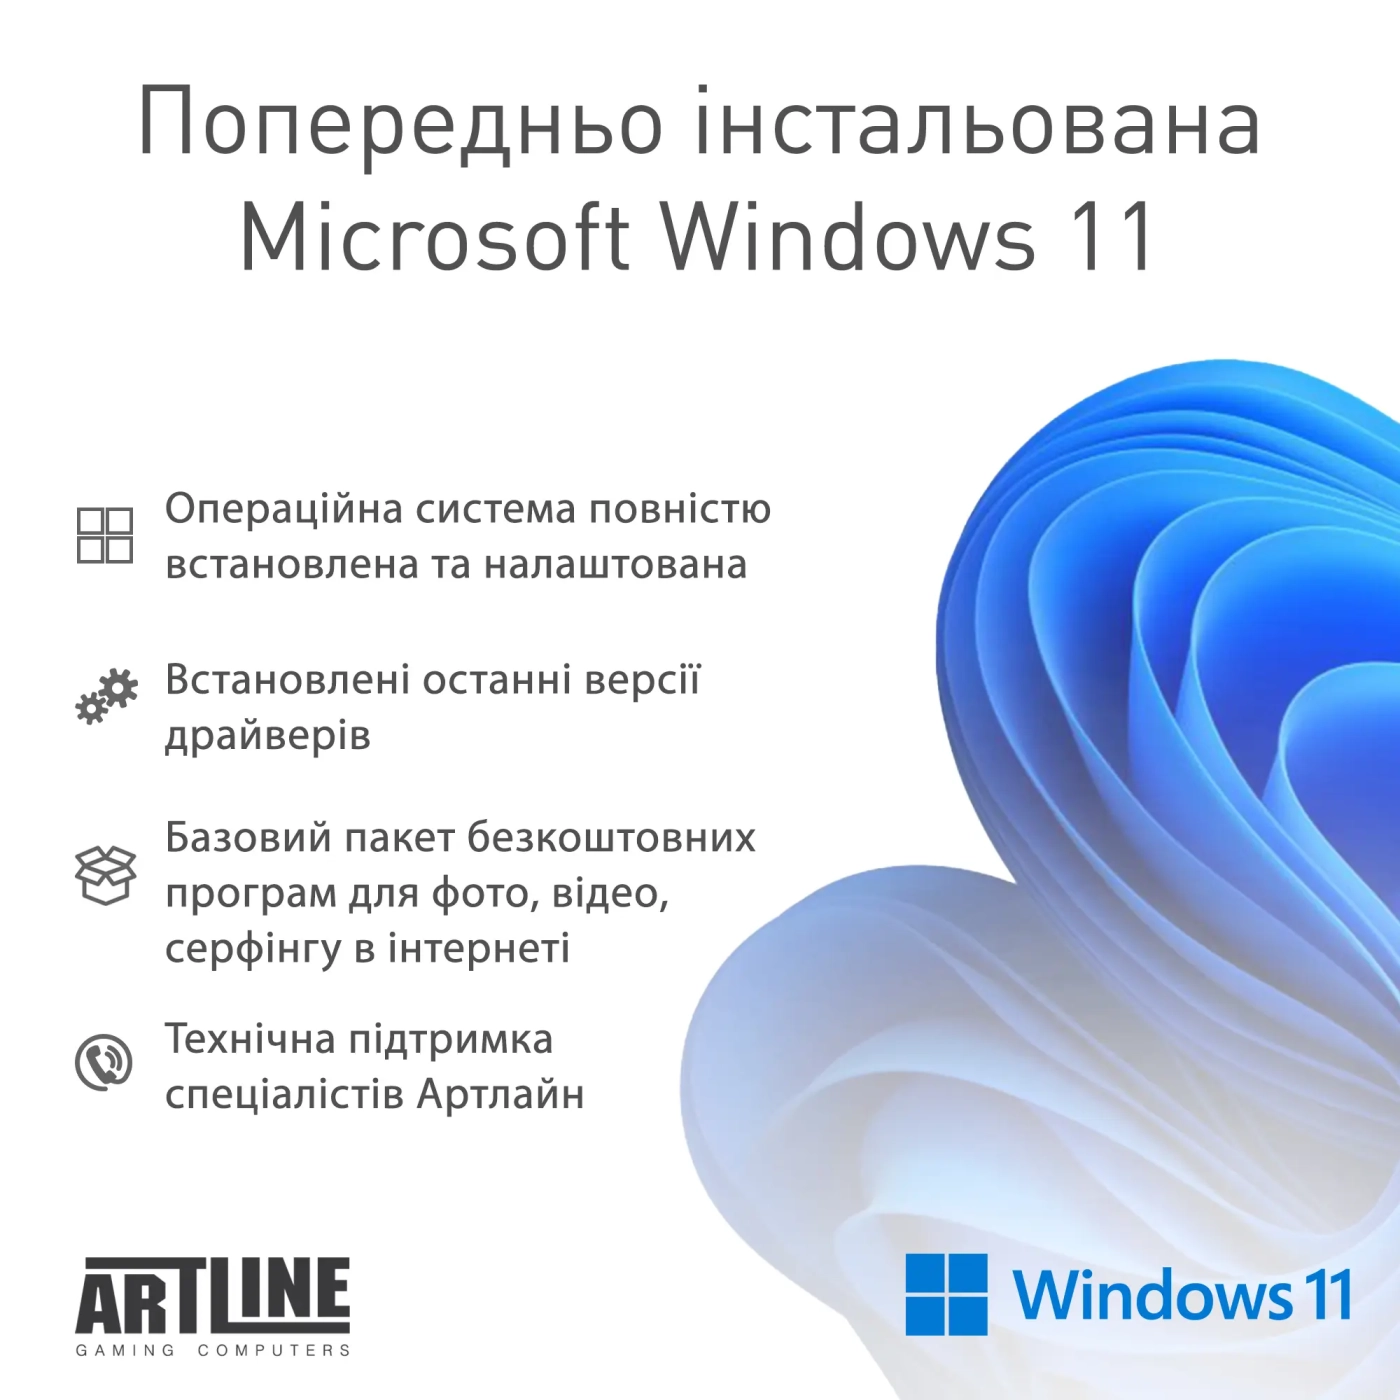 Купить Рабочая станция ARTLINE WorkStation W52 Windows 11 Pro (W52v18Win) - фото 7